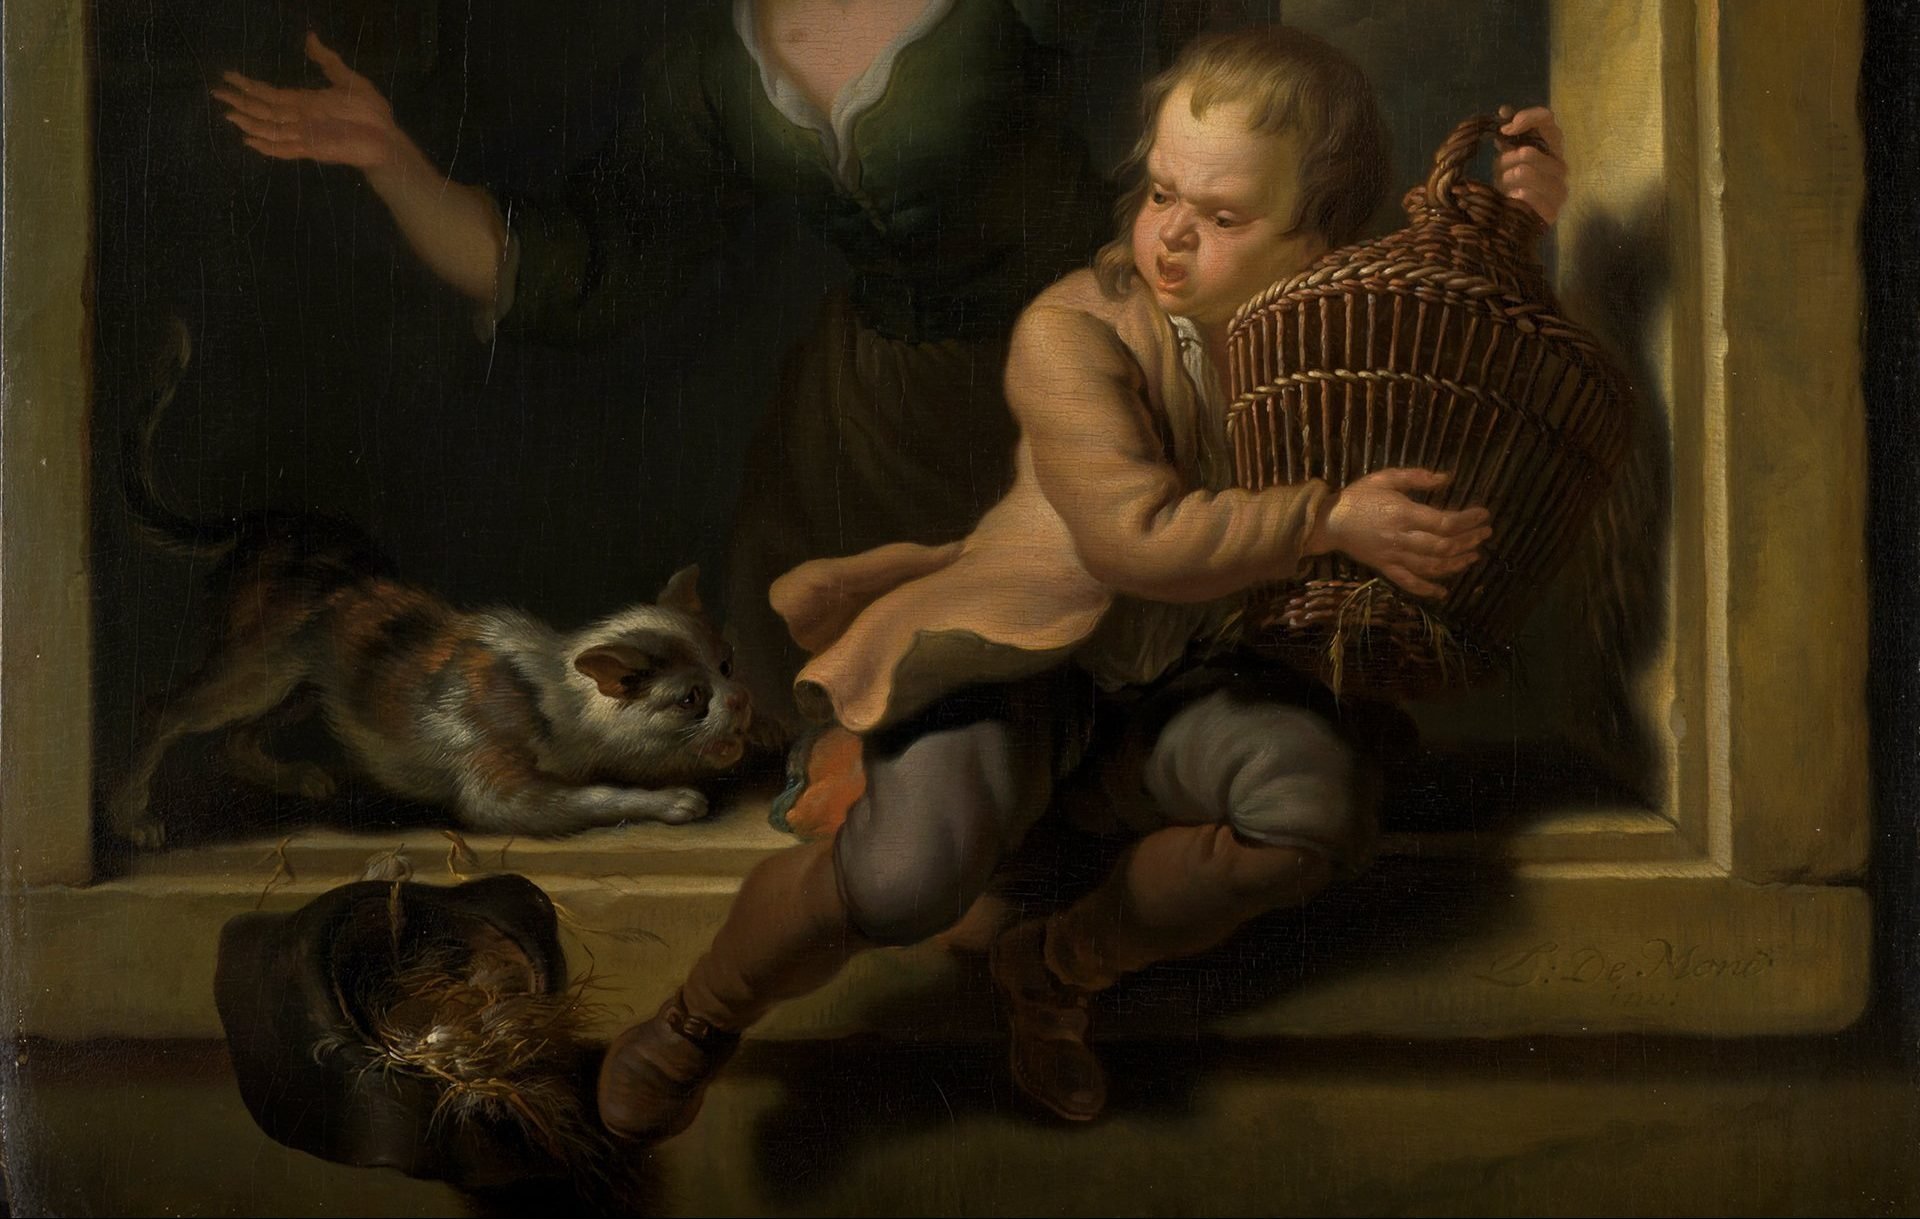 Ausschnitt aus dem Gemälde Die Rettung des Vogels vor der Katze von Louis de Moni aus der Sammlung der Kunsthalle Karlsruhe. Es zeigt einen Knaben der in seinen Händen einen Vogelkäfig mit Vogel hält und es vor einer Katze beschützt.